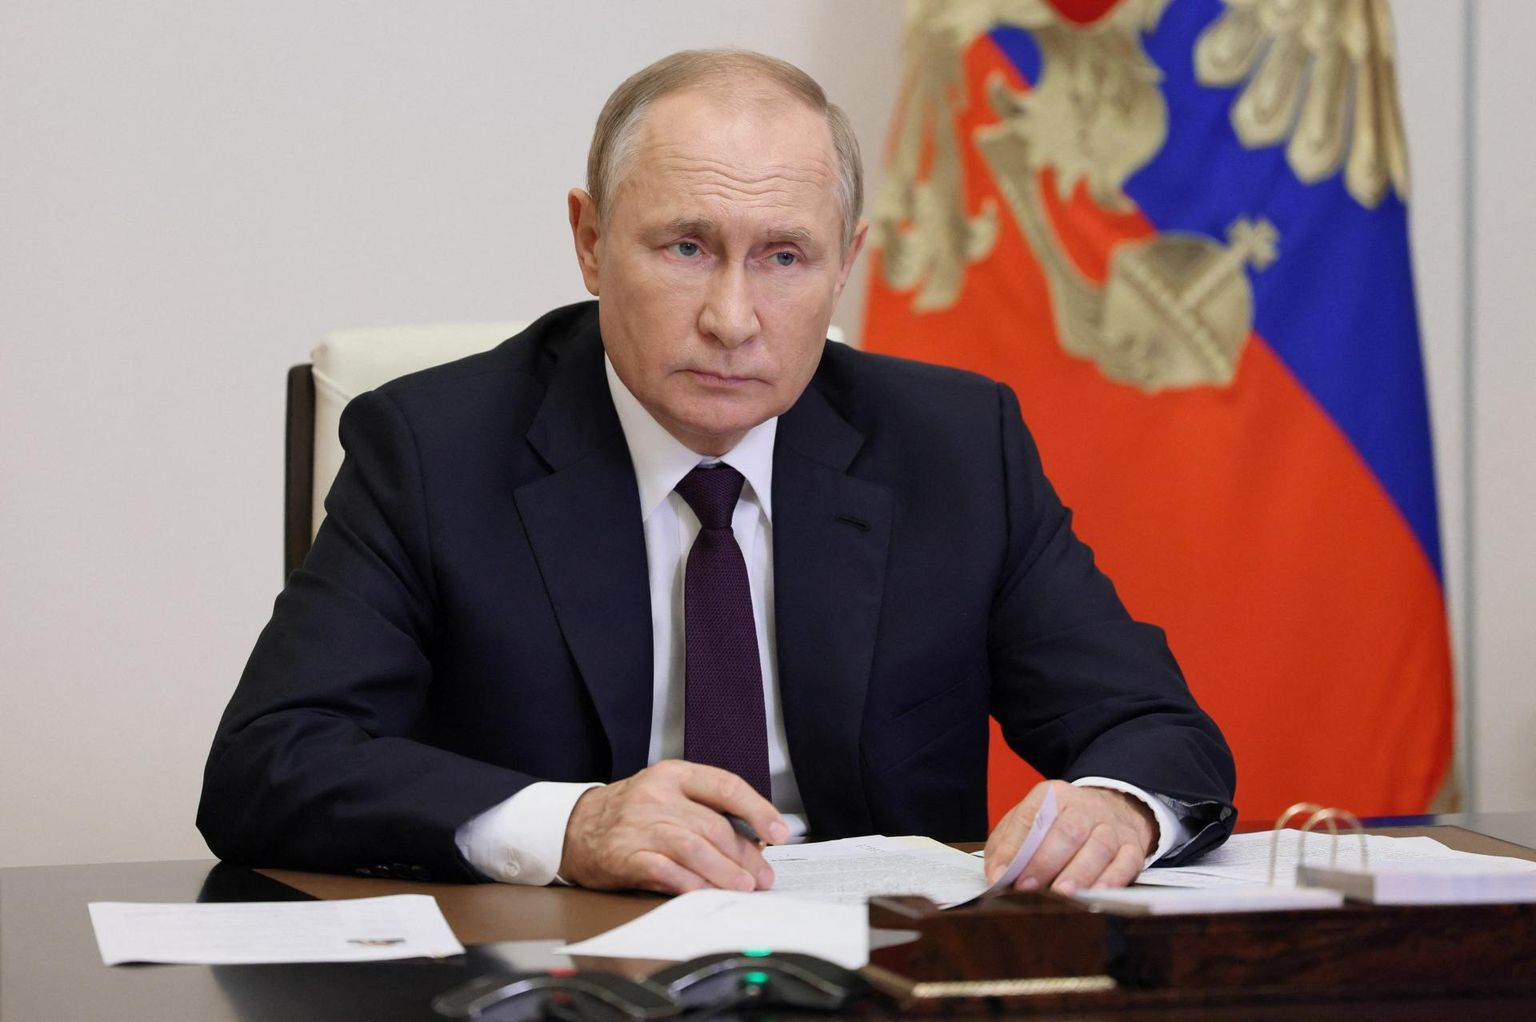 Venemaa presidendi Vladimir Putini juhitud režiimi peavad paljud riigid terroristlikuks.